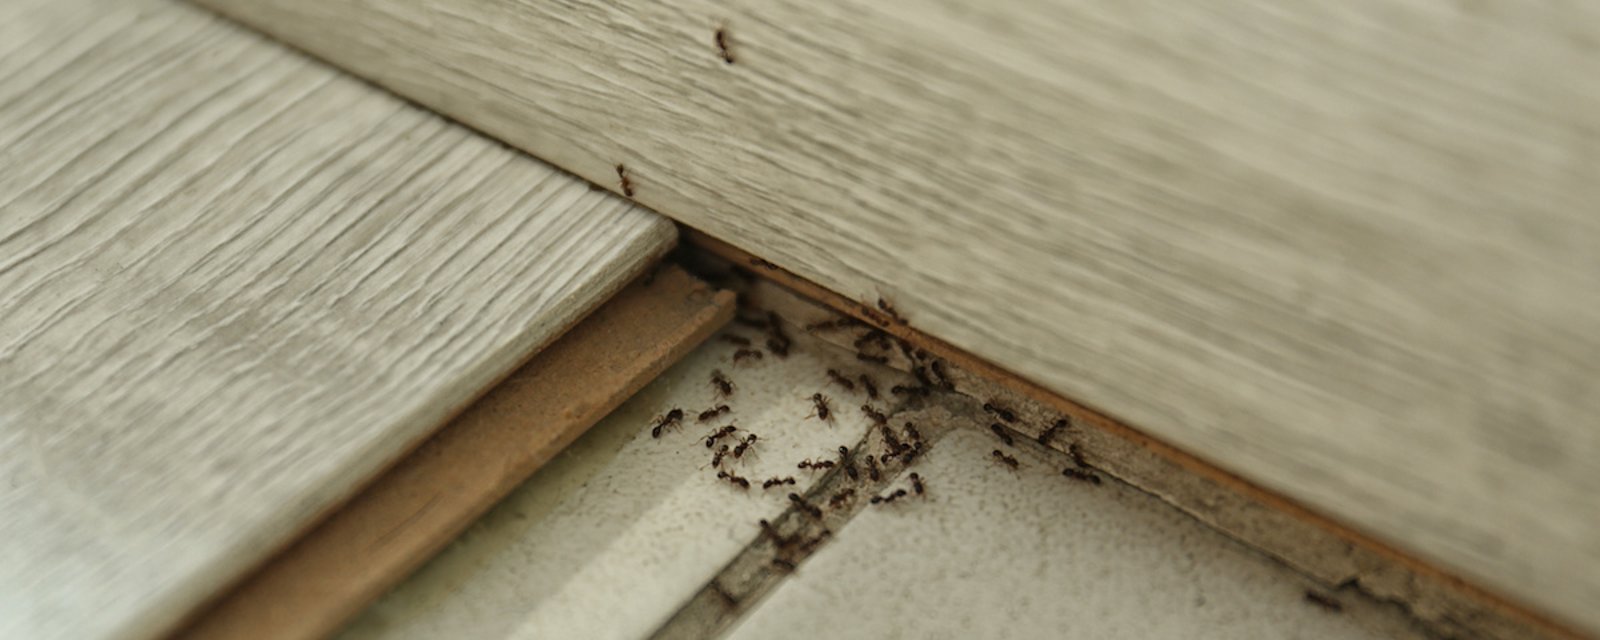 5 astuces pour éloigner naturellement les fourmis de votre maison 